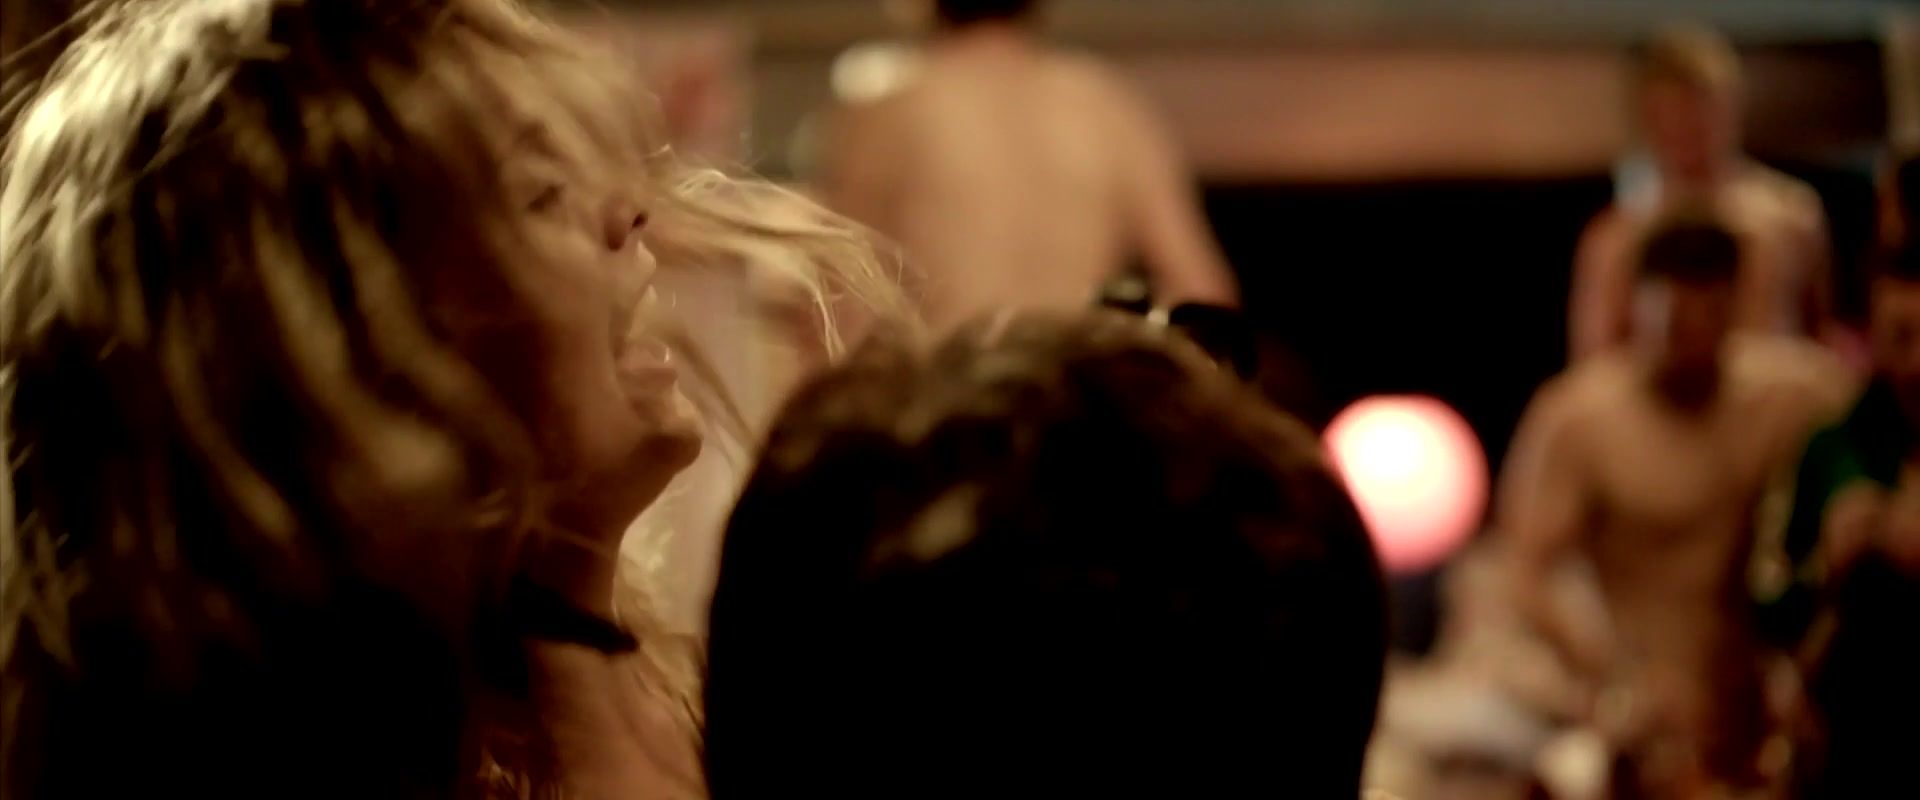 Slutload Celebs Naked Scenes with Hot Rose McIver | The movie "Blinder" | released in  2013 BigAndReady - 1